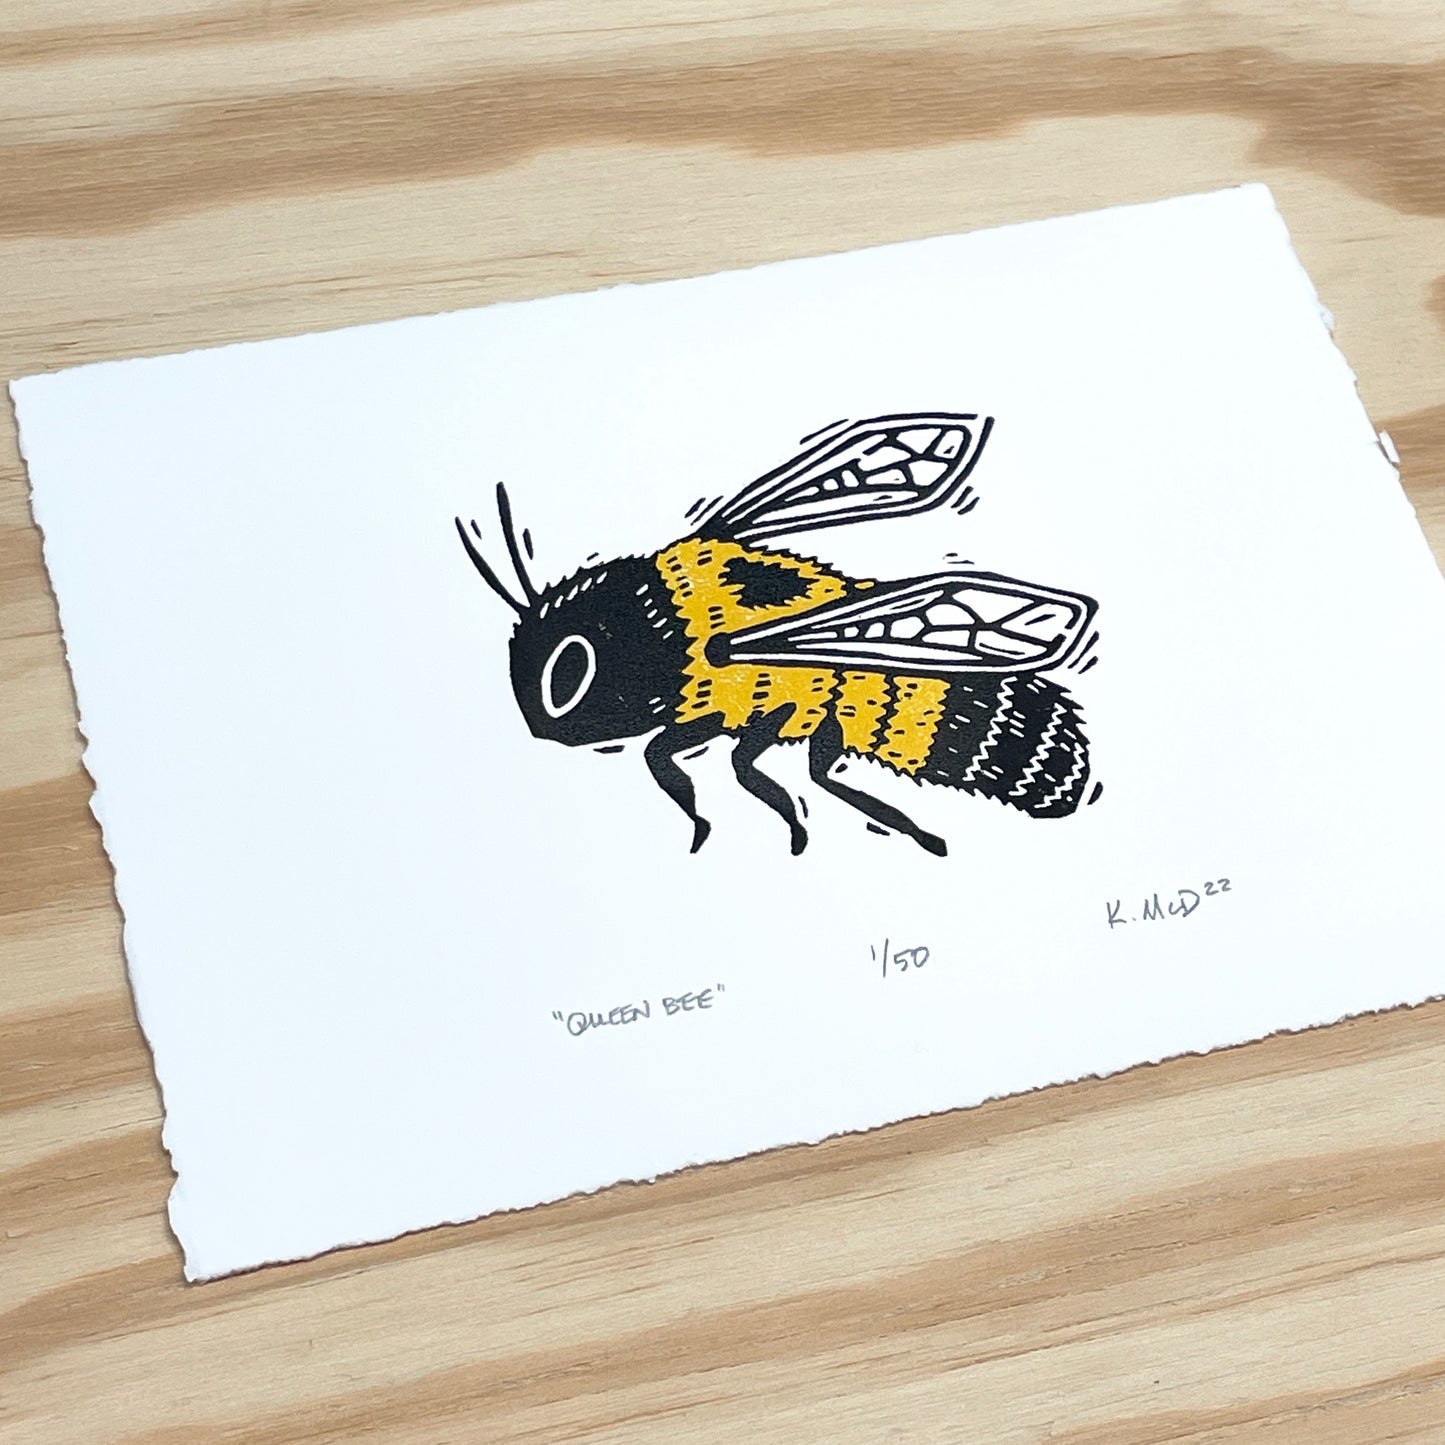 Queen Bee - woodblock print (5x7")